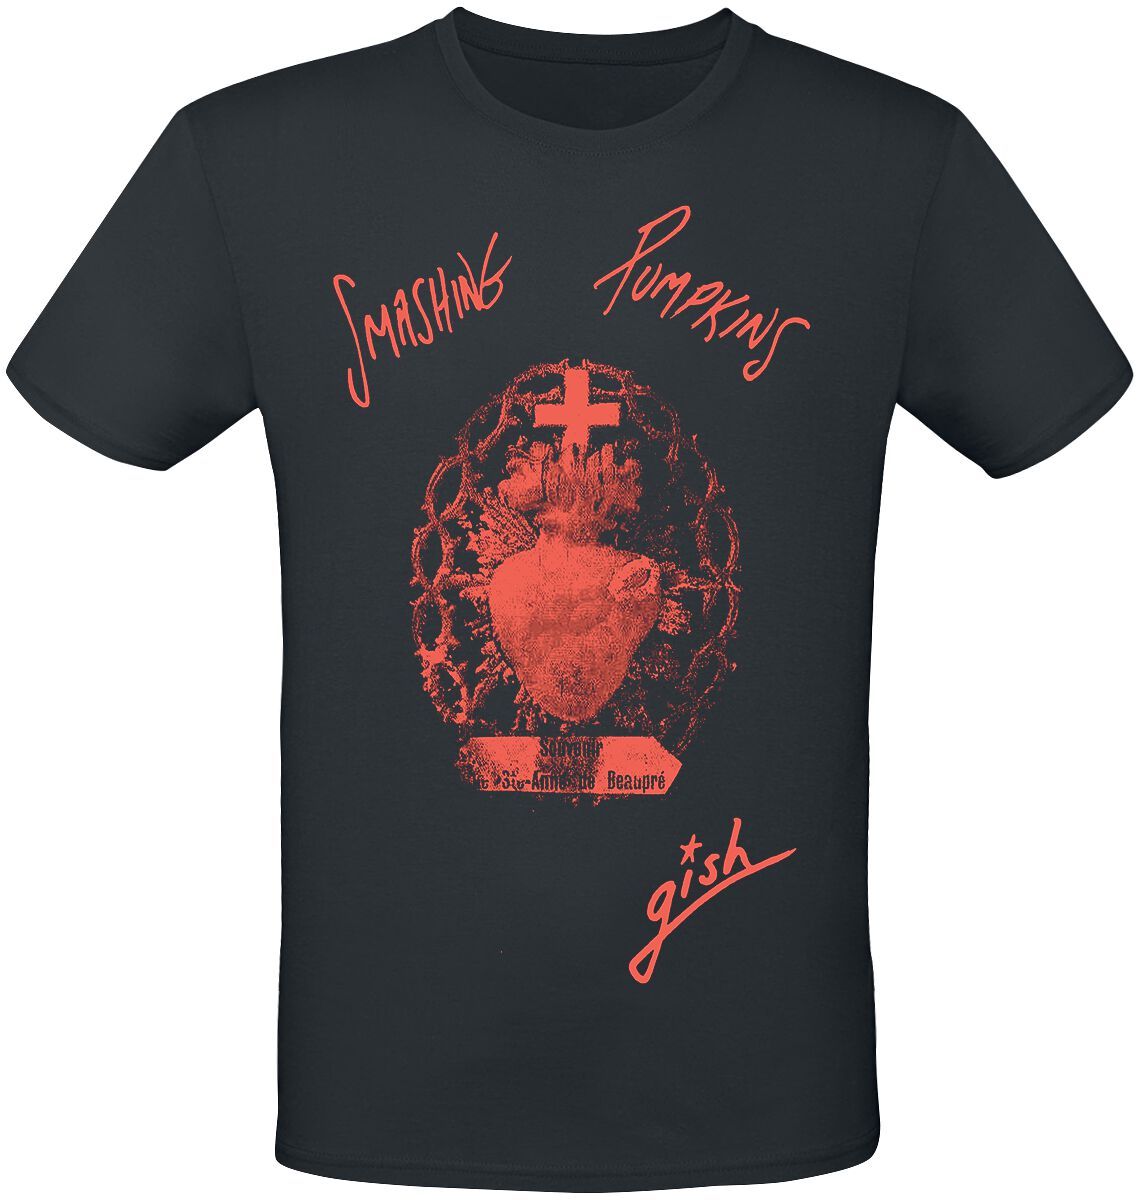 Smashing Pumpkins T-Shirt - Gish Sacred Heart - S bis 3XL - für Männer - Größe 3XL - schwarz  - Lizenziertes Merchandise!